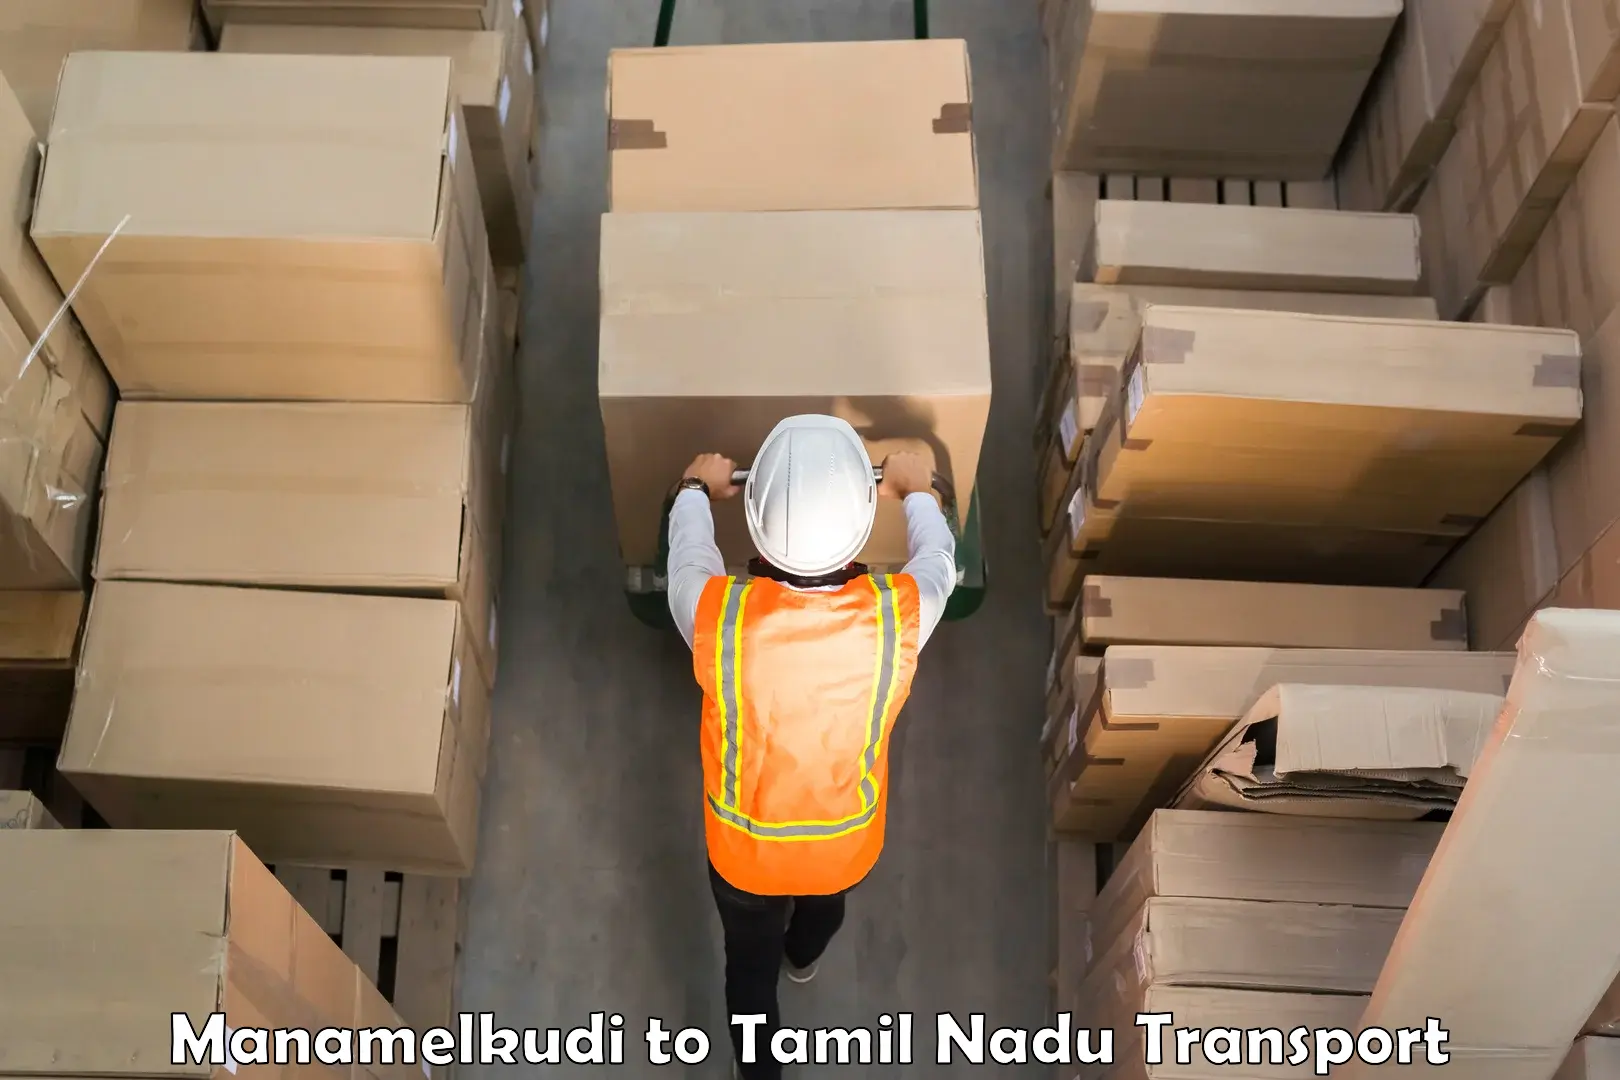 Two wheeler transport services Manamelkudi to Thiruvadanai